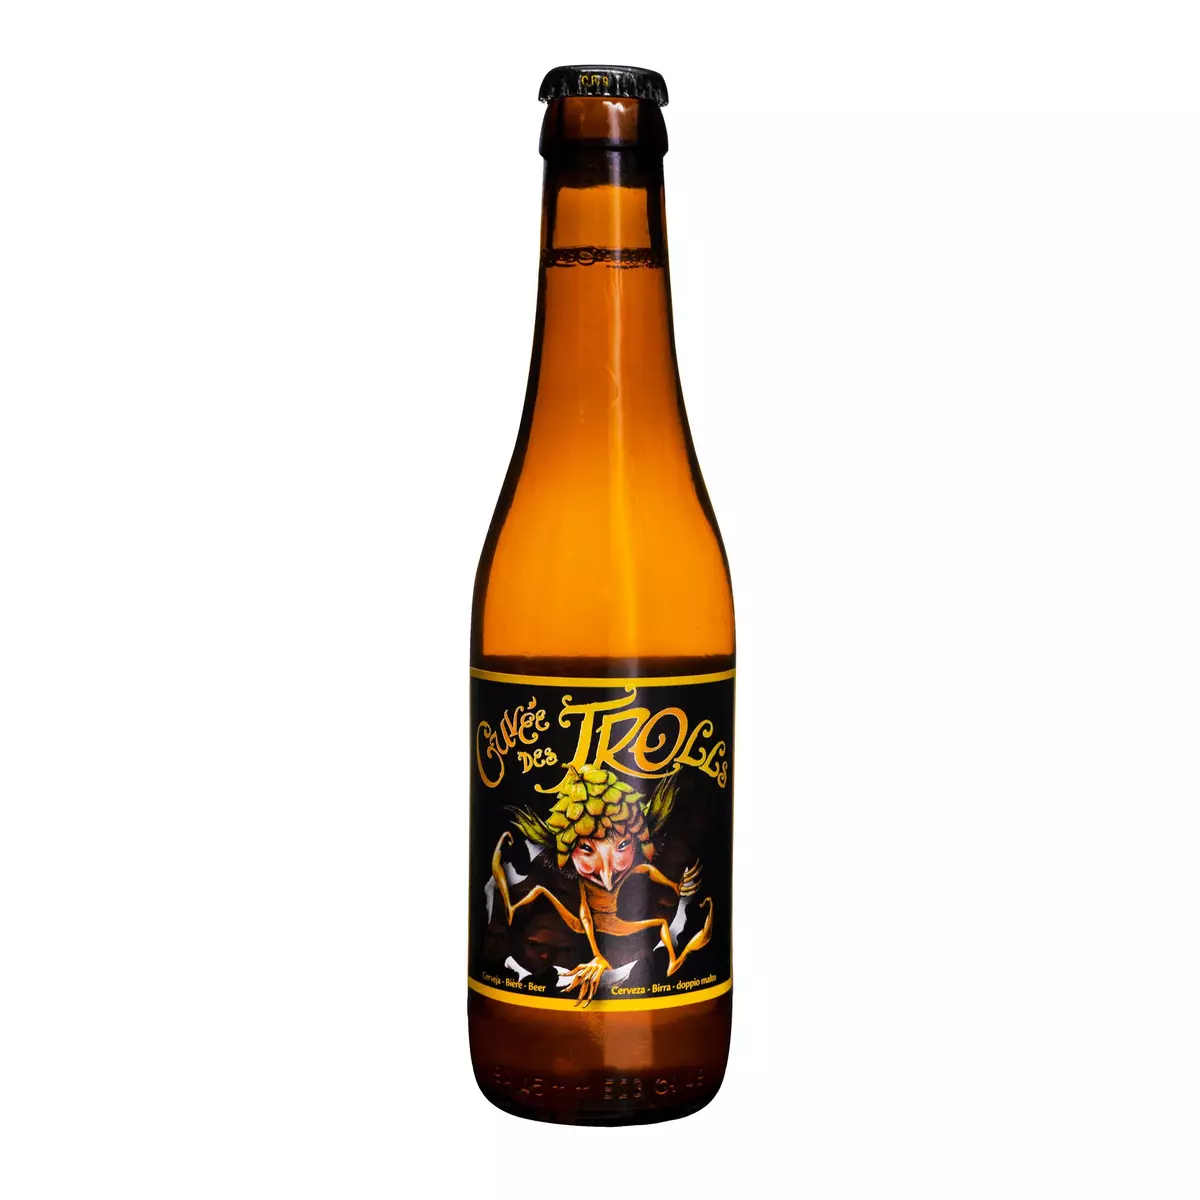 CUVEE DES TROLLS Bière blonde 7% 33cl